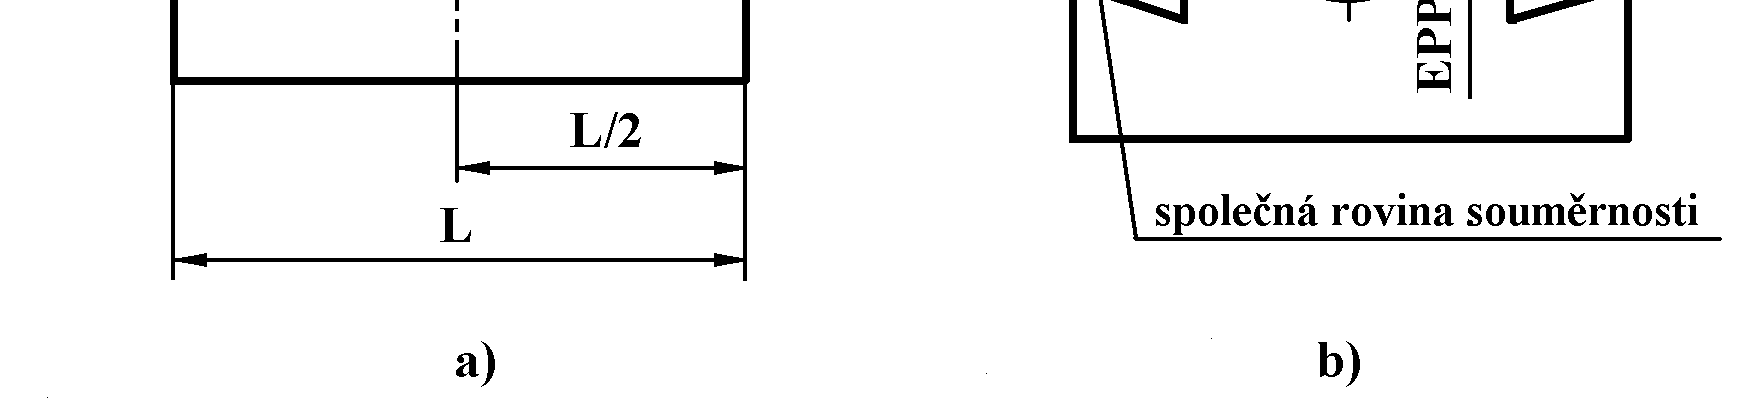 7), úchylkoměrem se změří výška plochy I, součást se otočí o 180 a změří se výška plochy II, a b EPP totéž se provede ve vzdálenosti vztažného úseku, odchylka souměrnosti plochy k ose rotace je